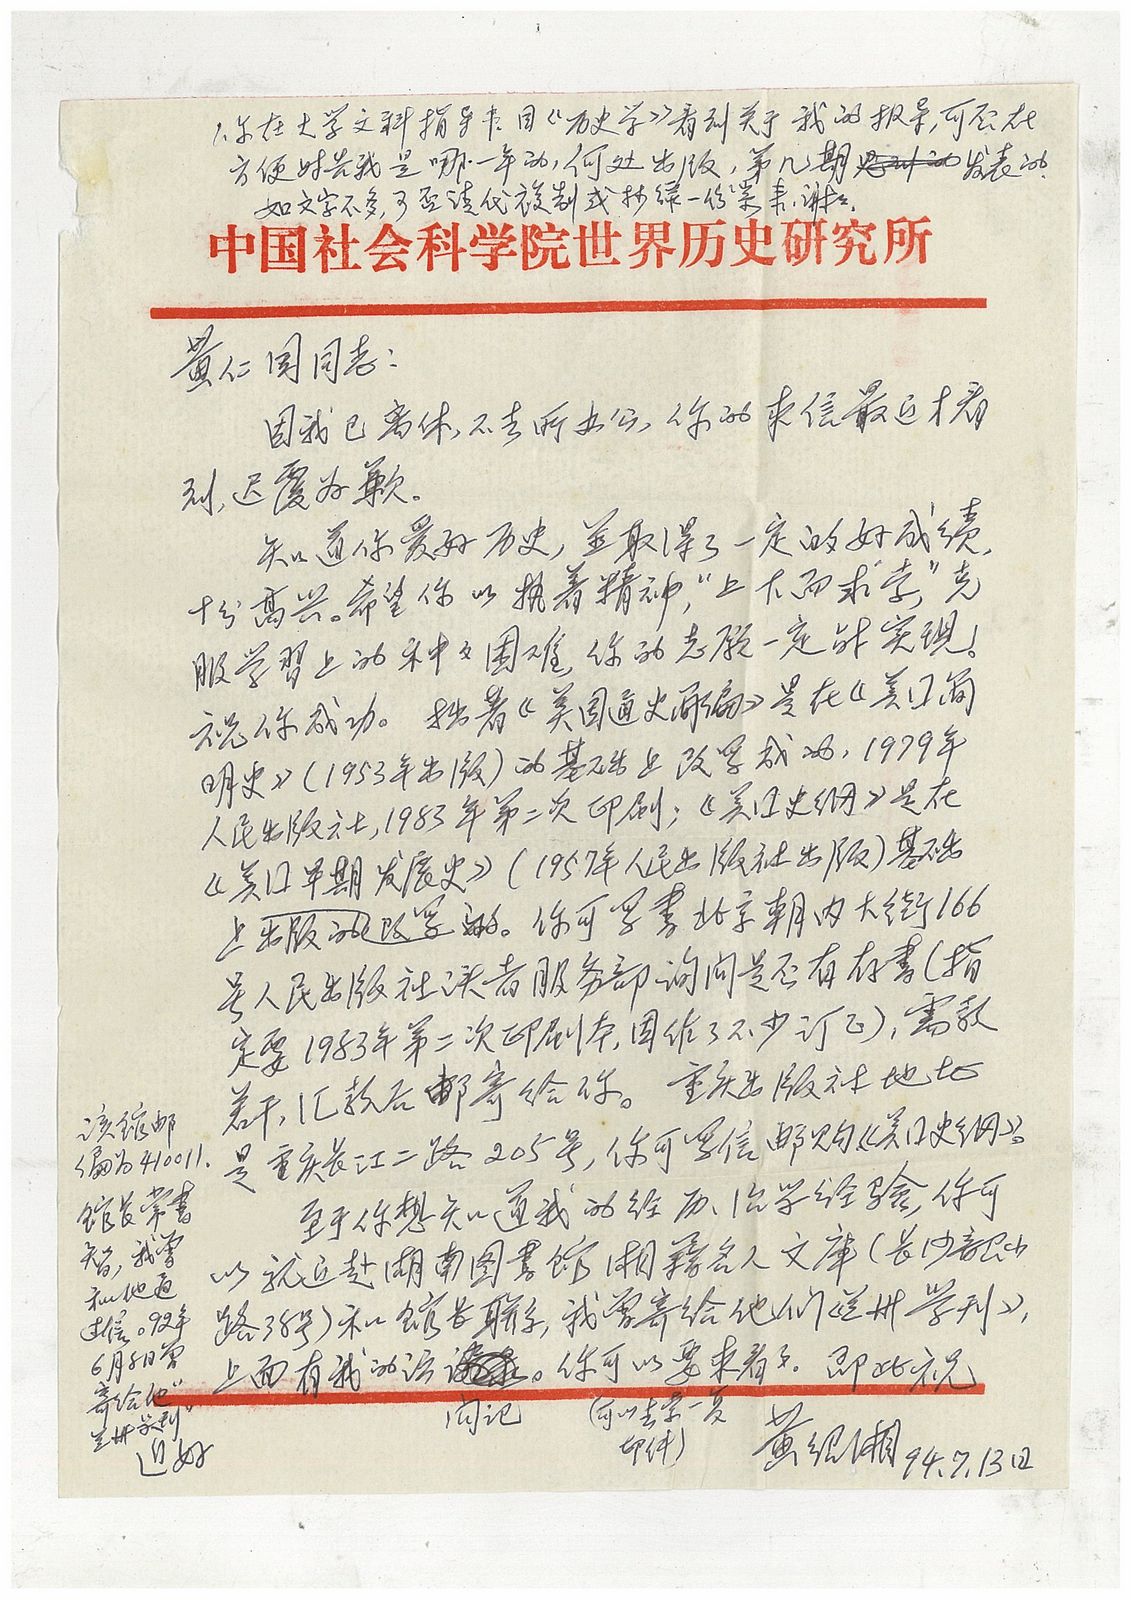 黄绍湘研究员给后辈学人的两封回信